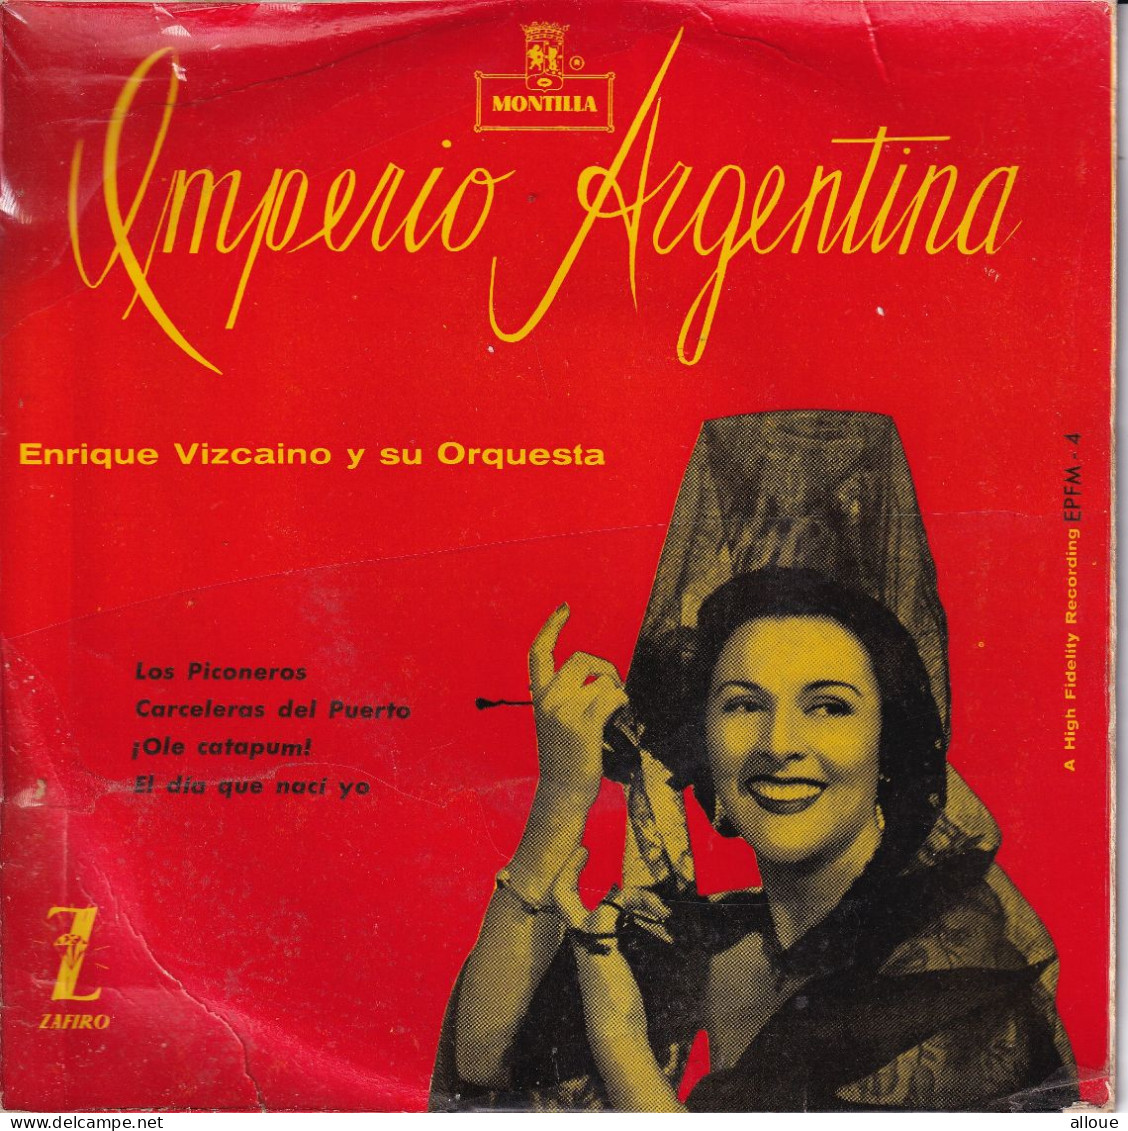 ENRIQUE VIZCAINO Y SU ORQUESTA - SPAIN EP - IMPERIO ARGENTINA - World Music